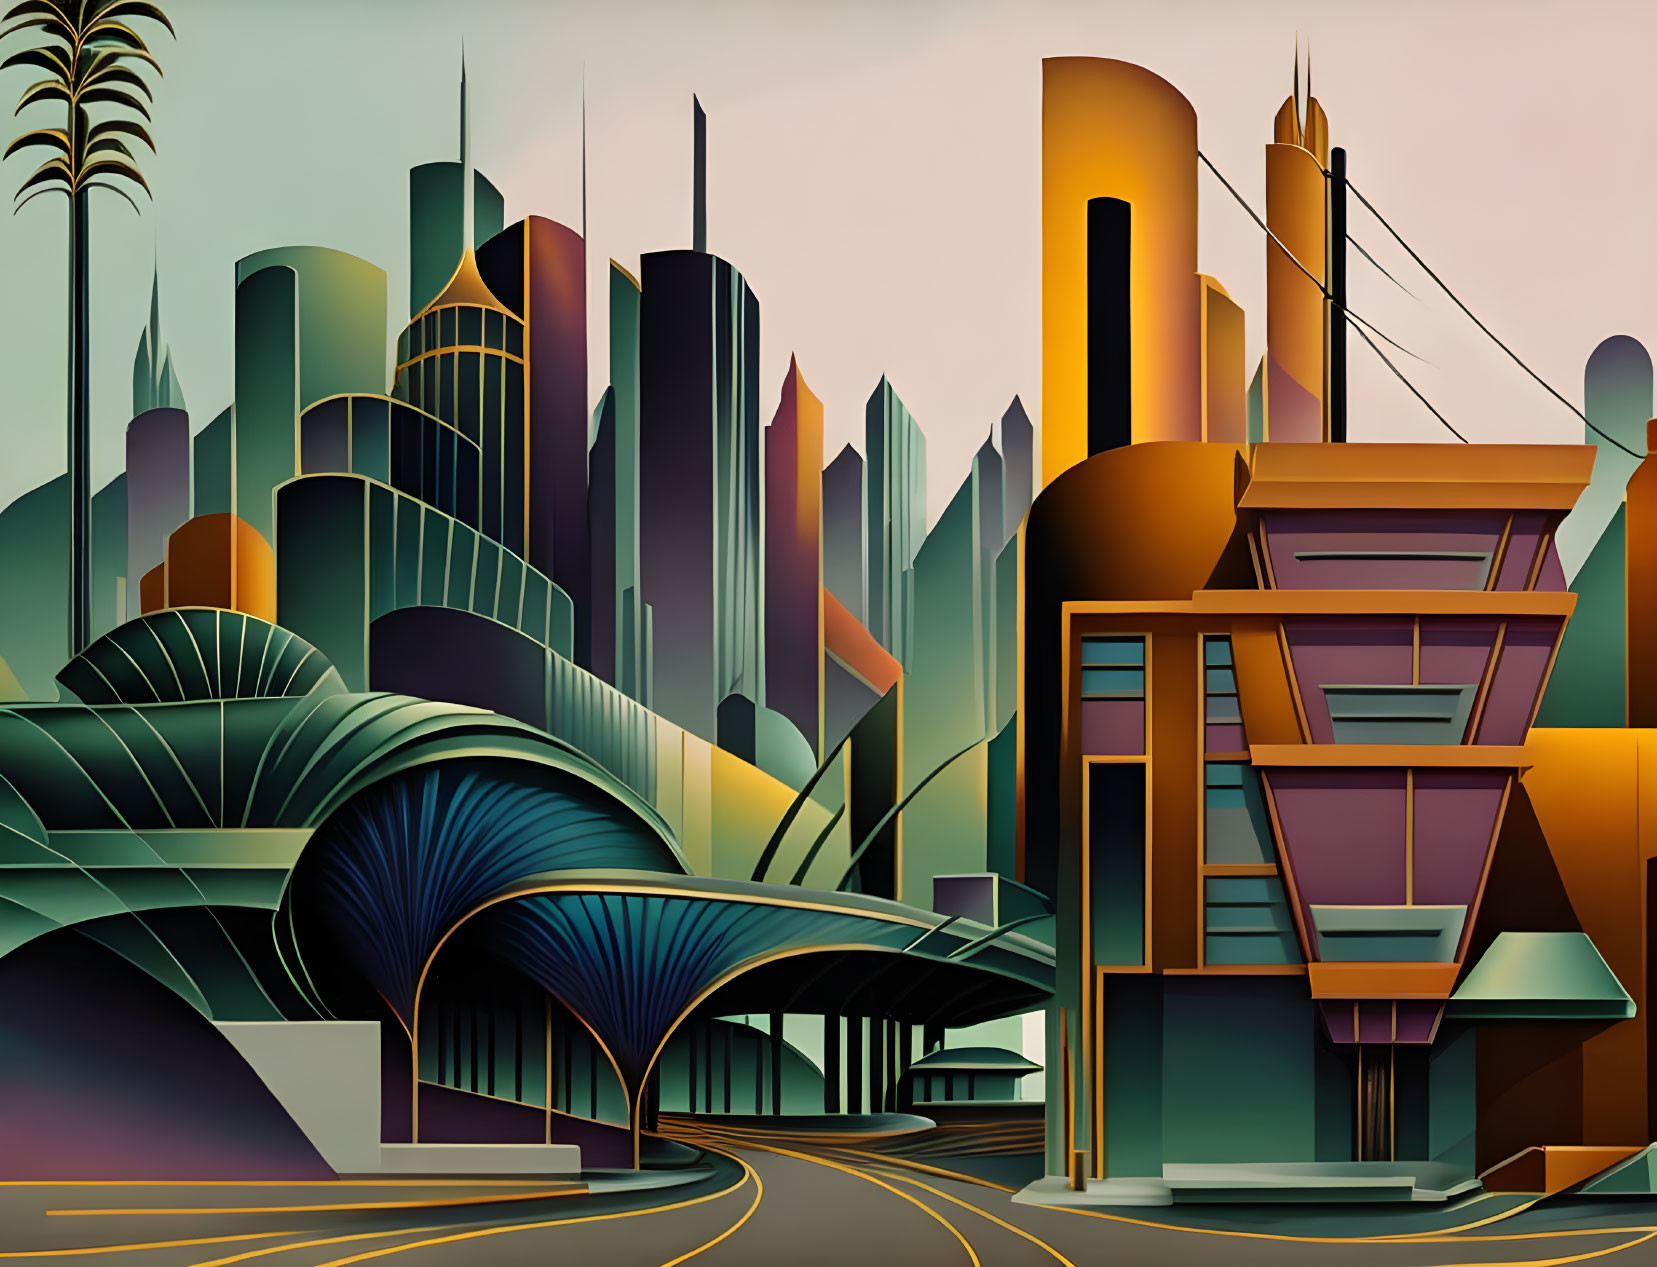 Geometric Art Deco Cityscape Illustration in Vibrant Colors